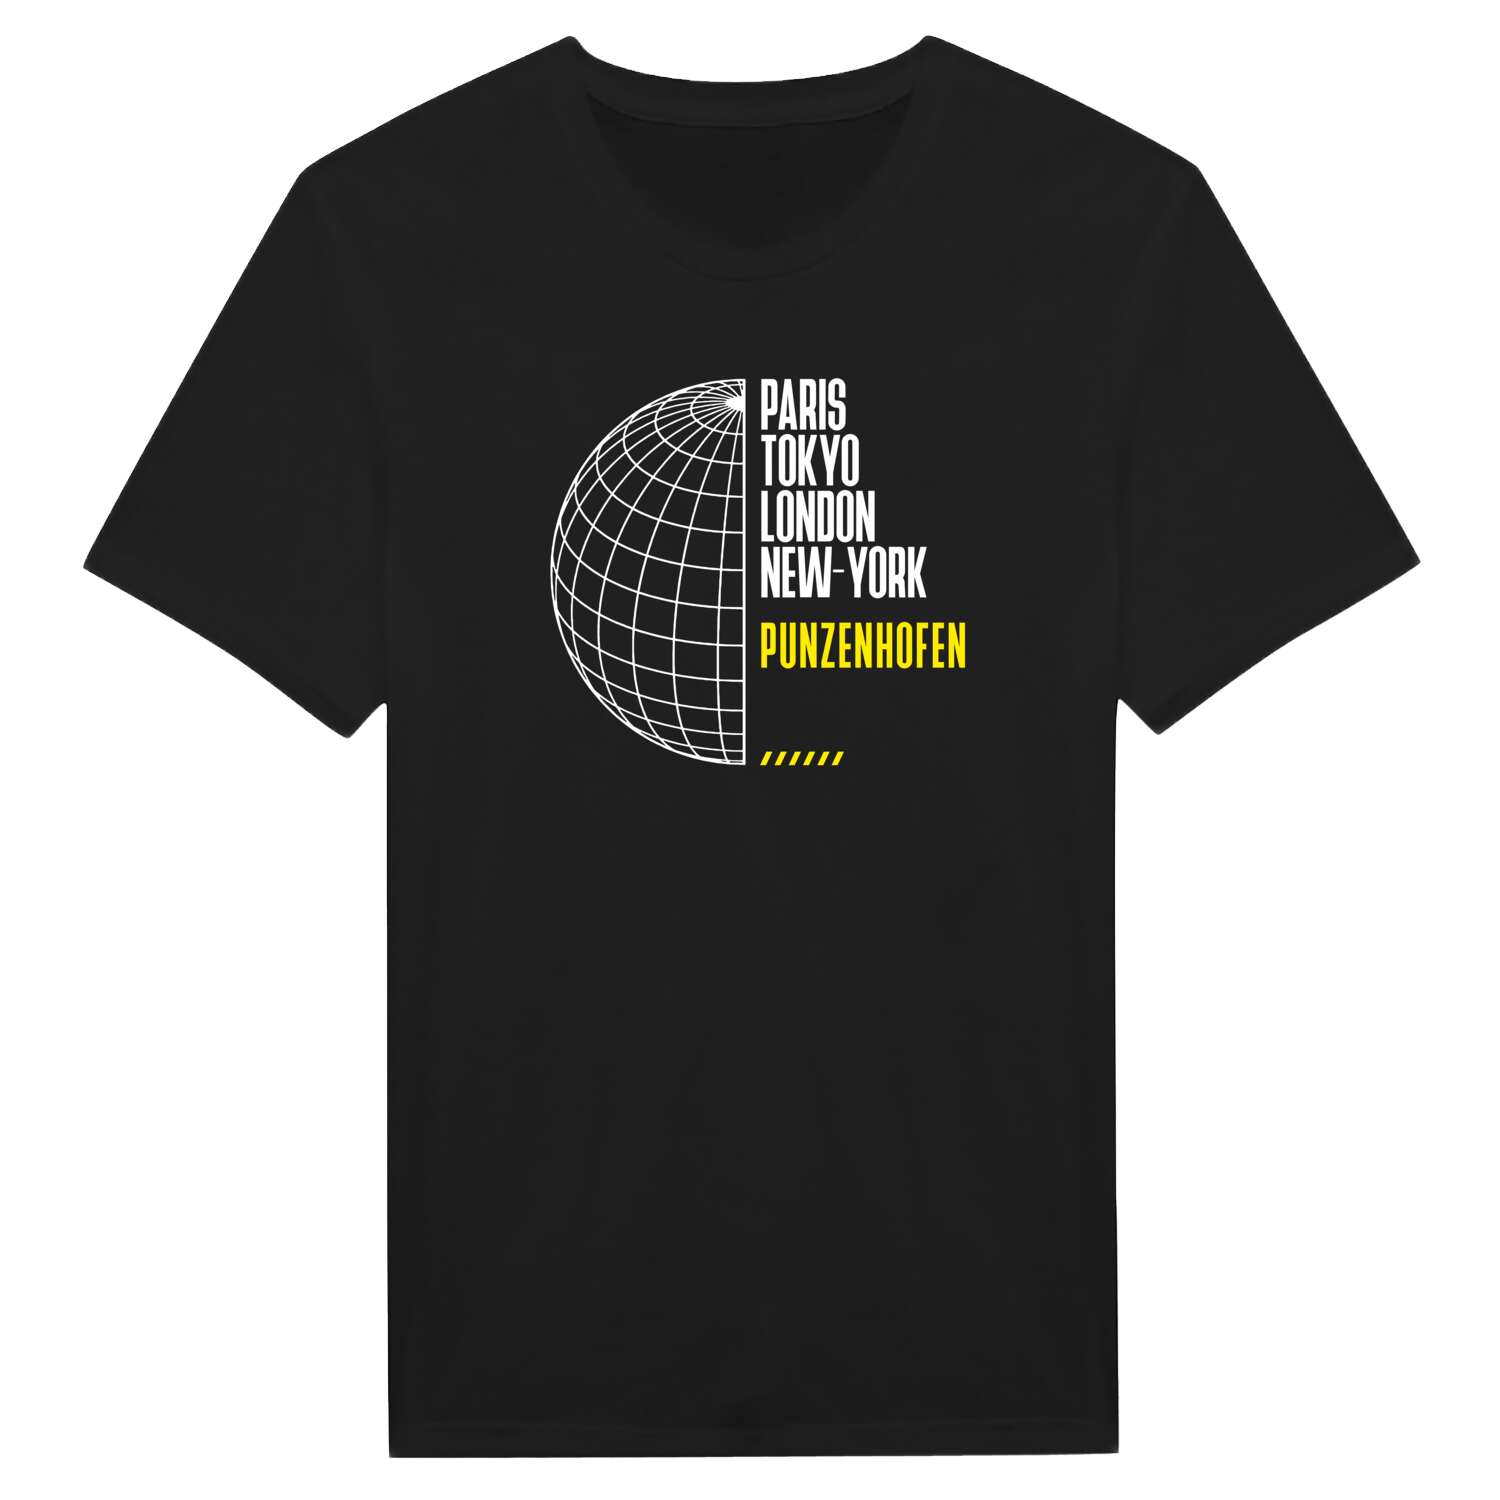 Punzenhofen T-Shirt »Paris Tokyo London«